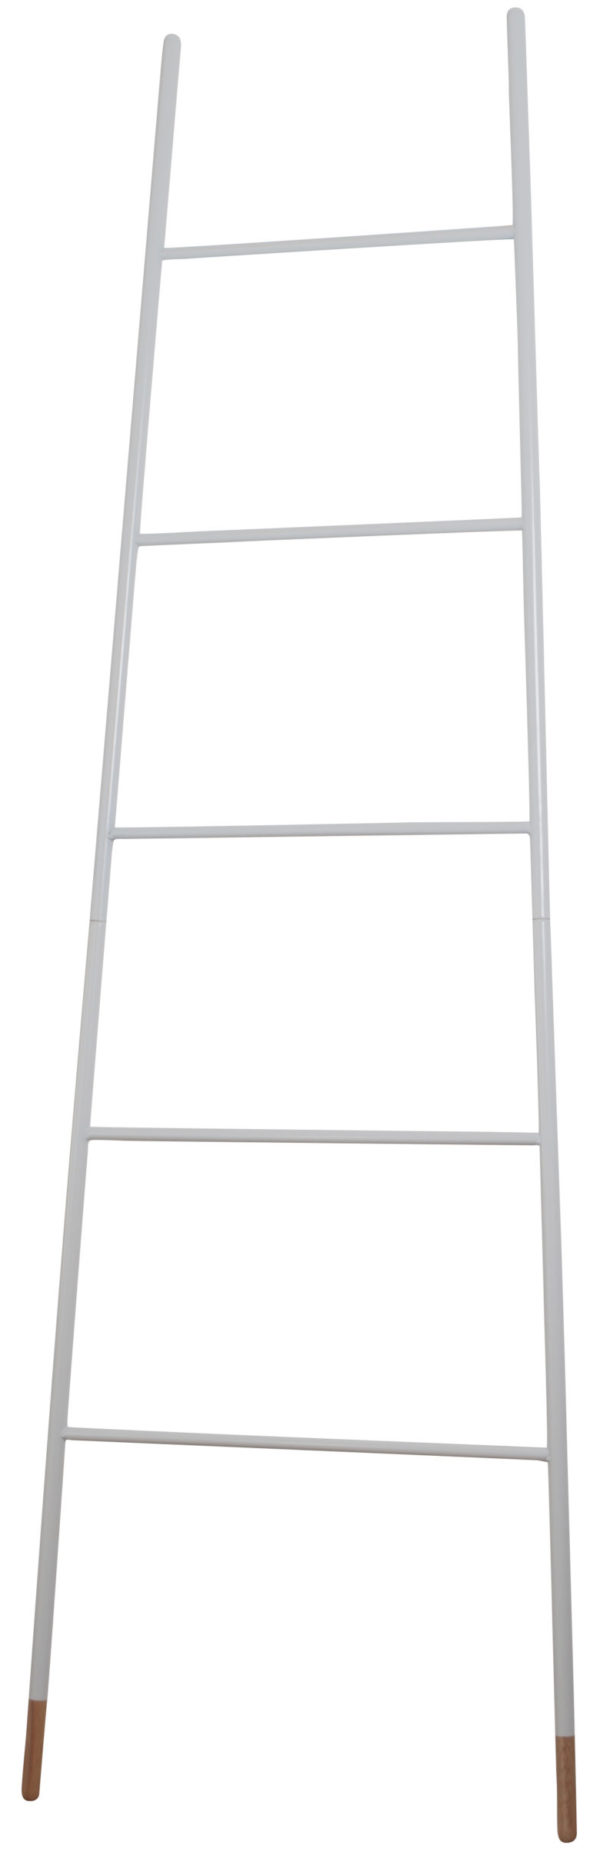 Ladder Rack White Zuiver  ZVR7900004